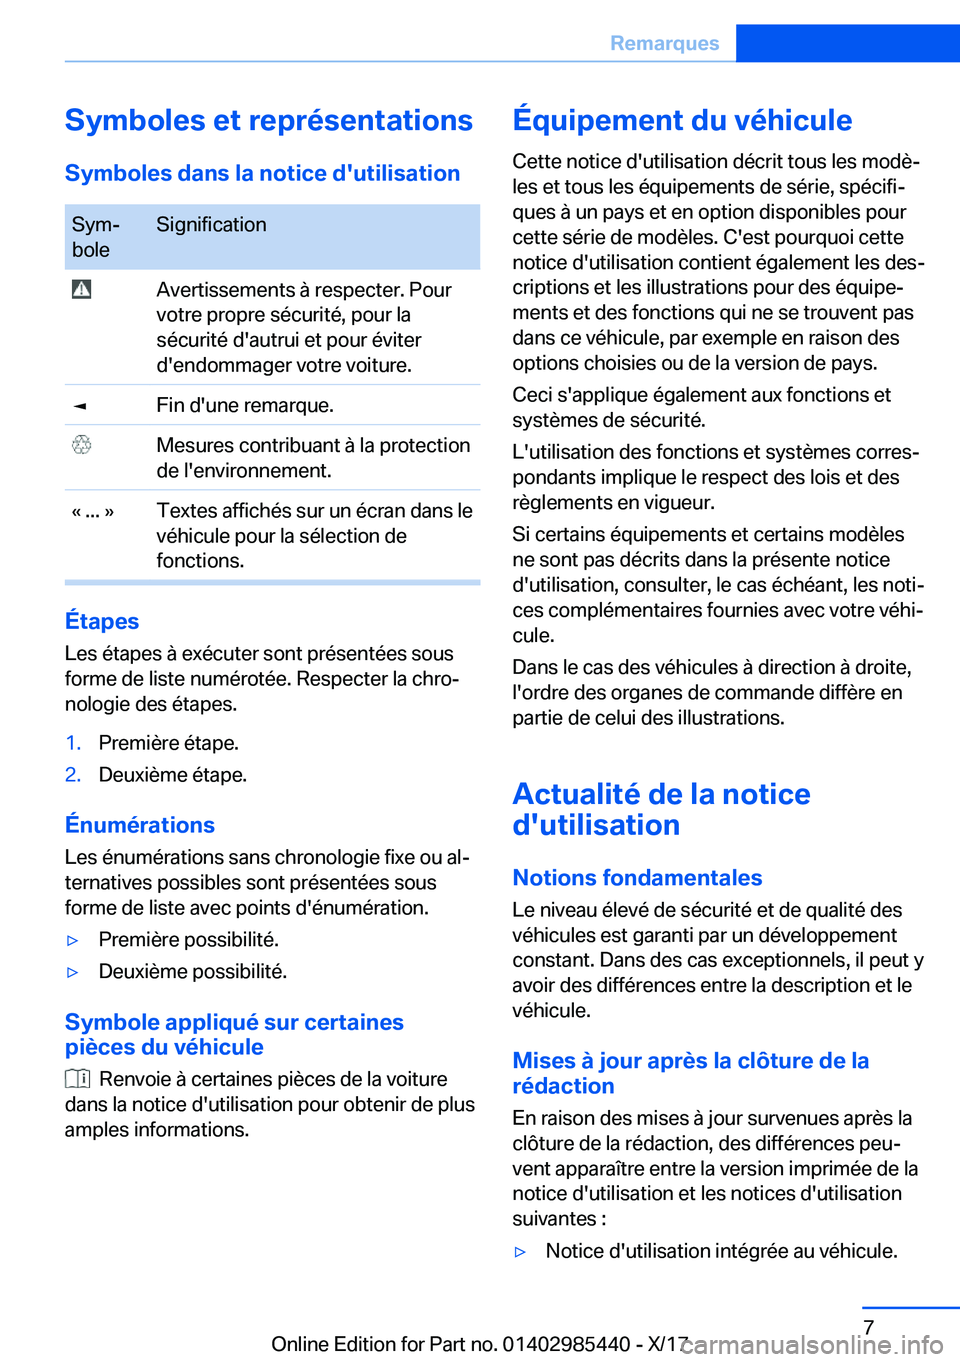 BMW X1 2018  Notices Demploi (in French) �S�y�m�b�o�l�e�s��e�t��r�e�p�r�é�s�e�n�t�a�t�i�o�n�s�S�y�m�b�o�l�e�s��d�a�n�s��l�a��n�o�t�i�c�e��d�'�u�t�i�l�i�s�a�t�i�o�n�S�y�mj
�b�o�l�e�S�i�g�n�i�f�i�c�a�t�i�o�n� �A�v�e�r�t�i�s�s�e�m�e